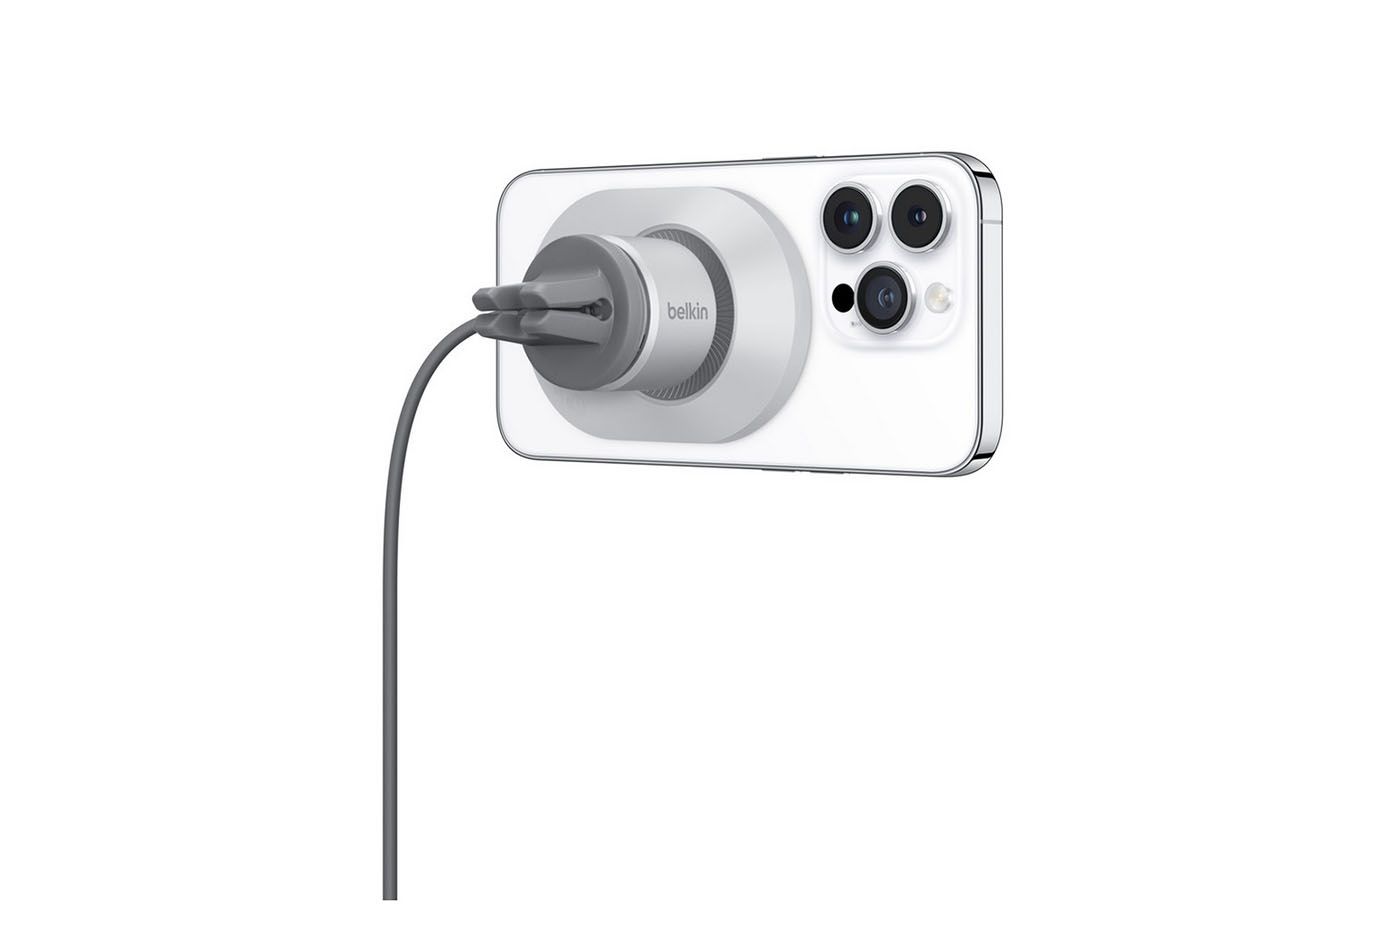 Belkin prezentuje bezprzewodową ładowarkę samochodową Boost Charge Pro dla iPhone'a z MagSafe za 100 dolarów